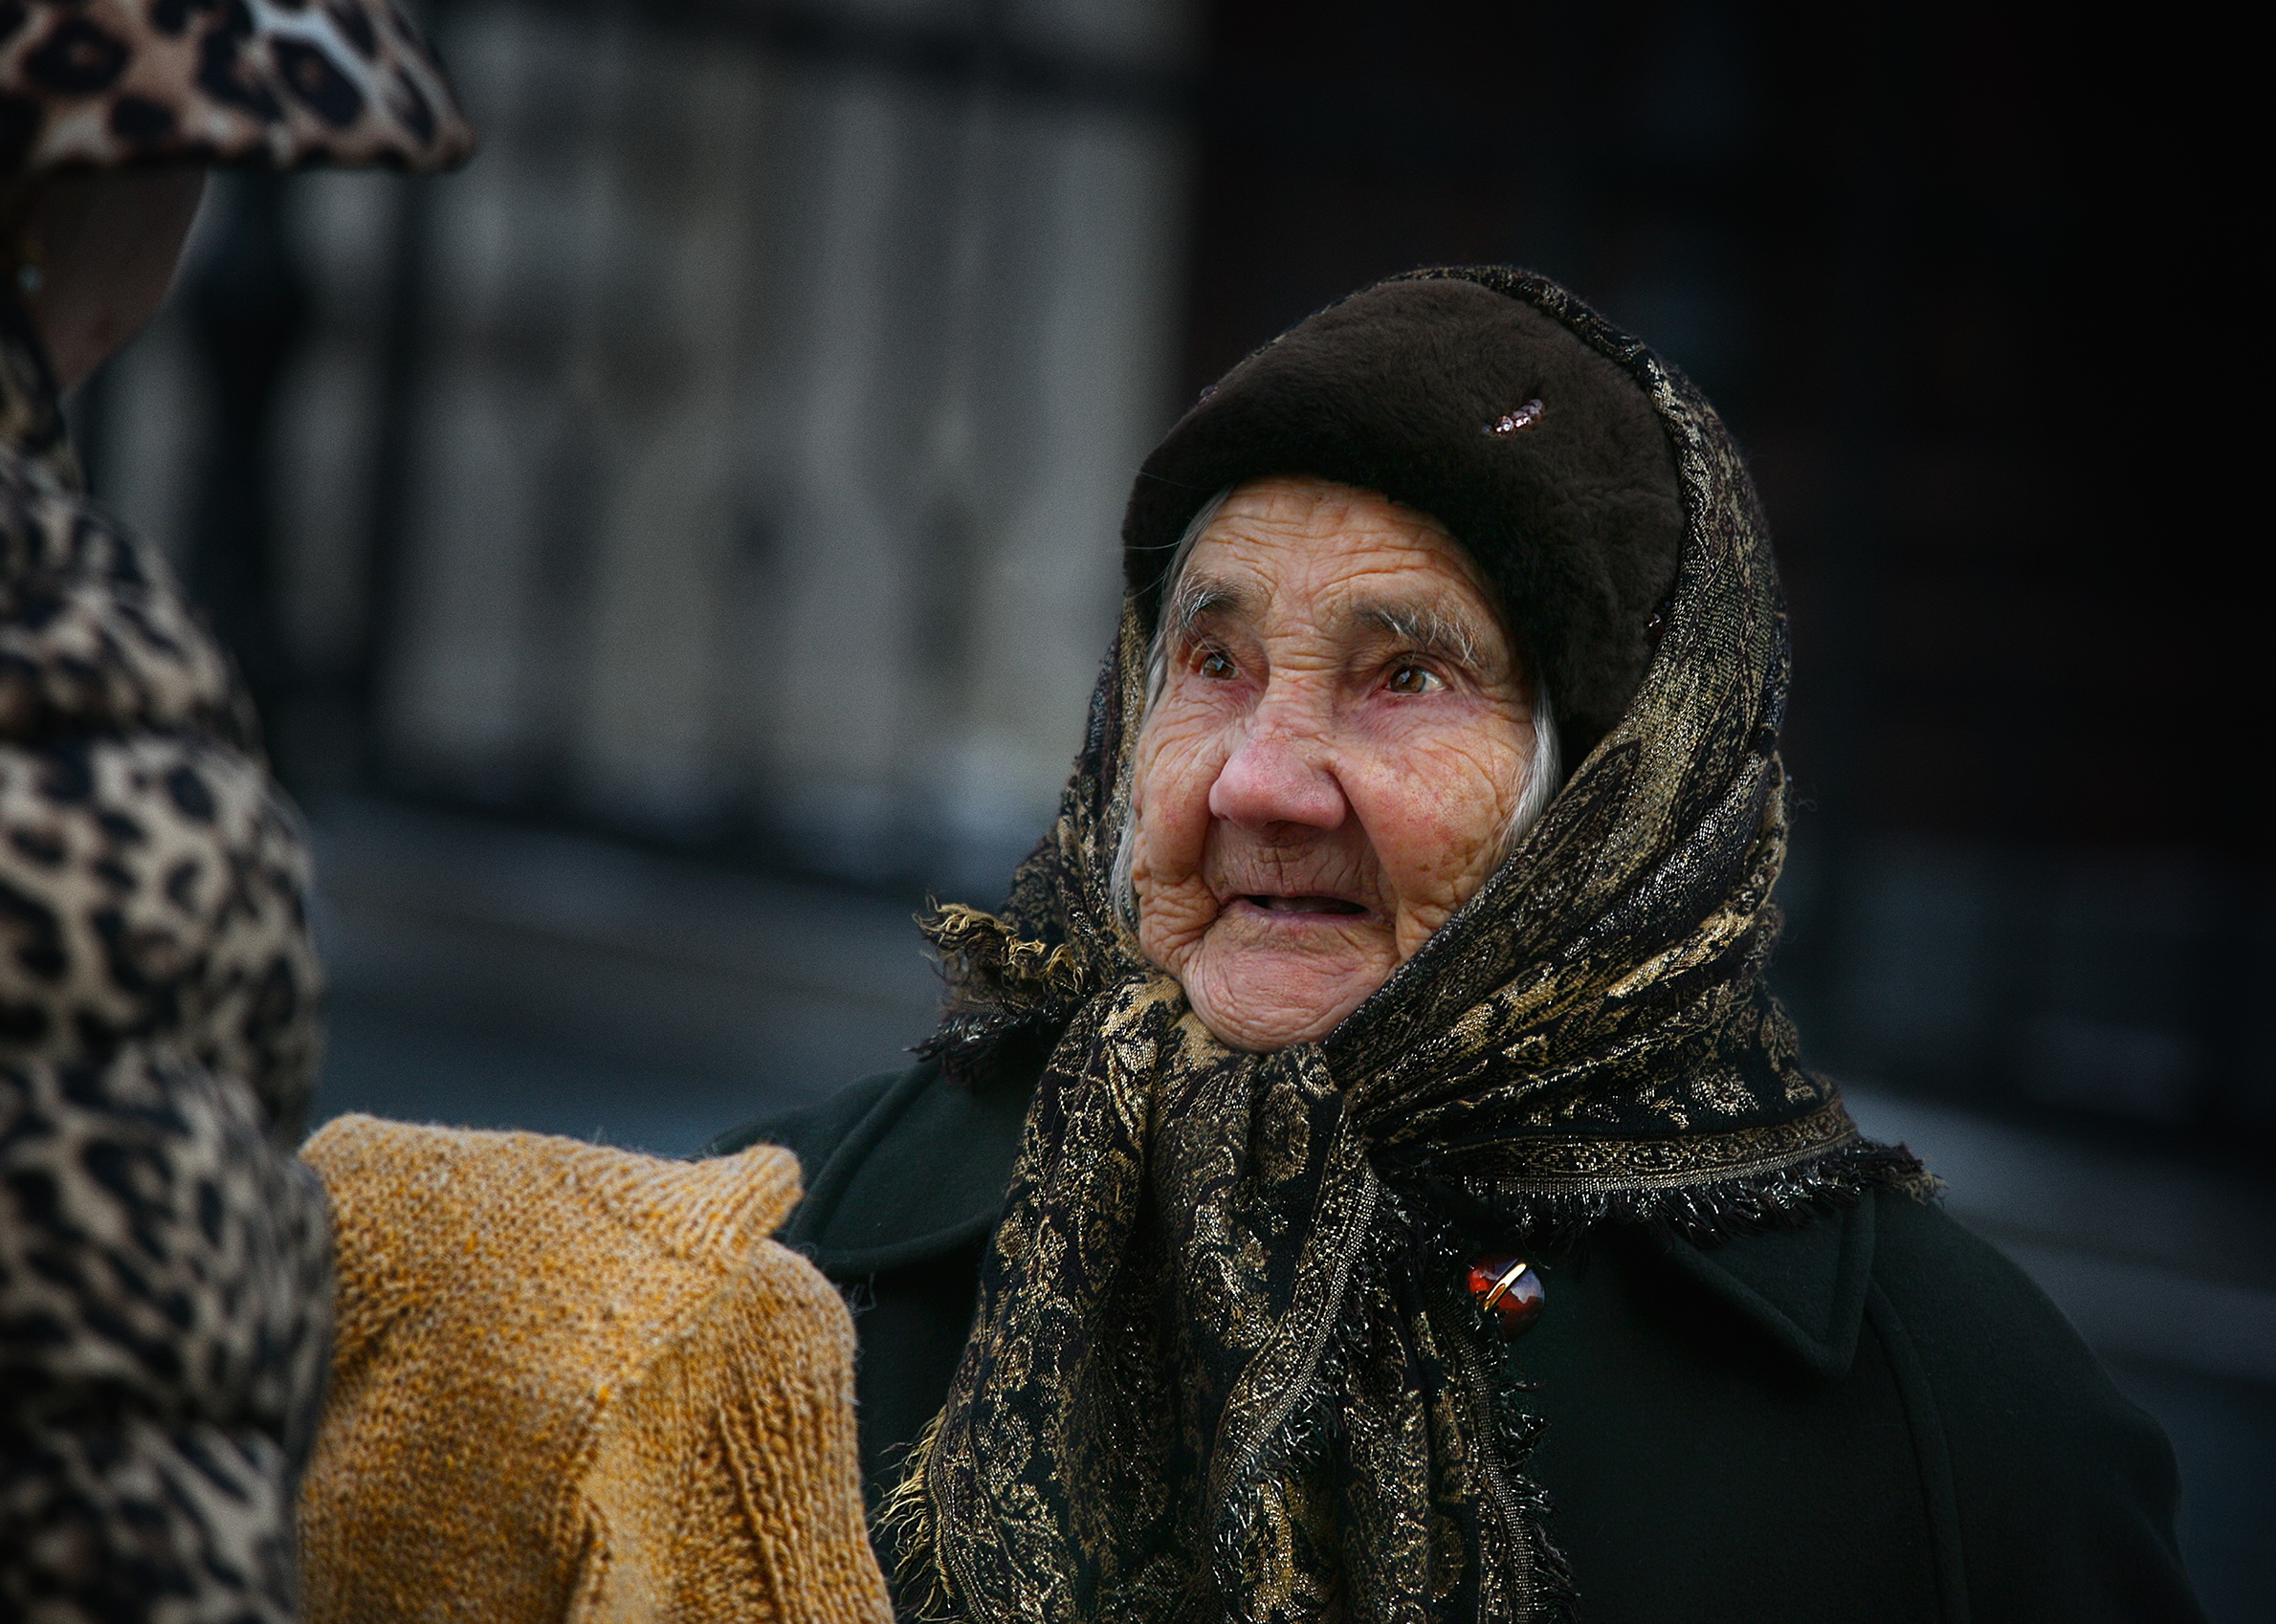 городские картинки, город и люди, женский уличный портрет, золотой возраст, Vera Trandina